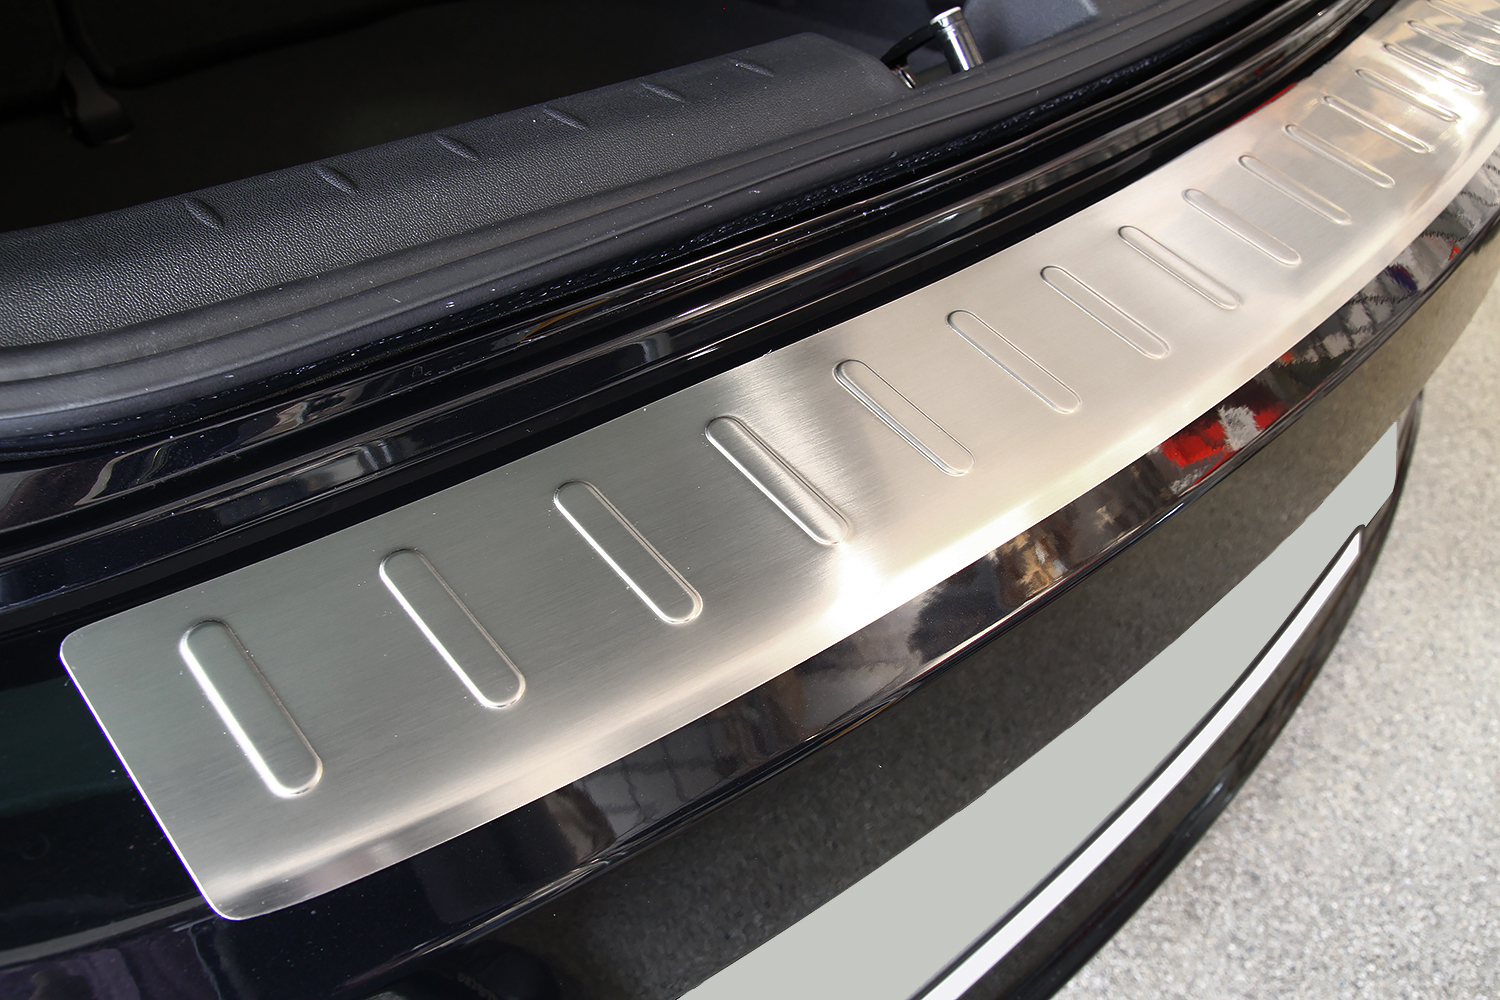 Kofferraumschutz für VW Golf 7 (tiefer Ladeboden) ab Baujahr 2012